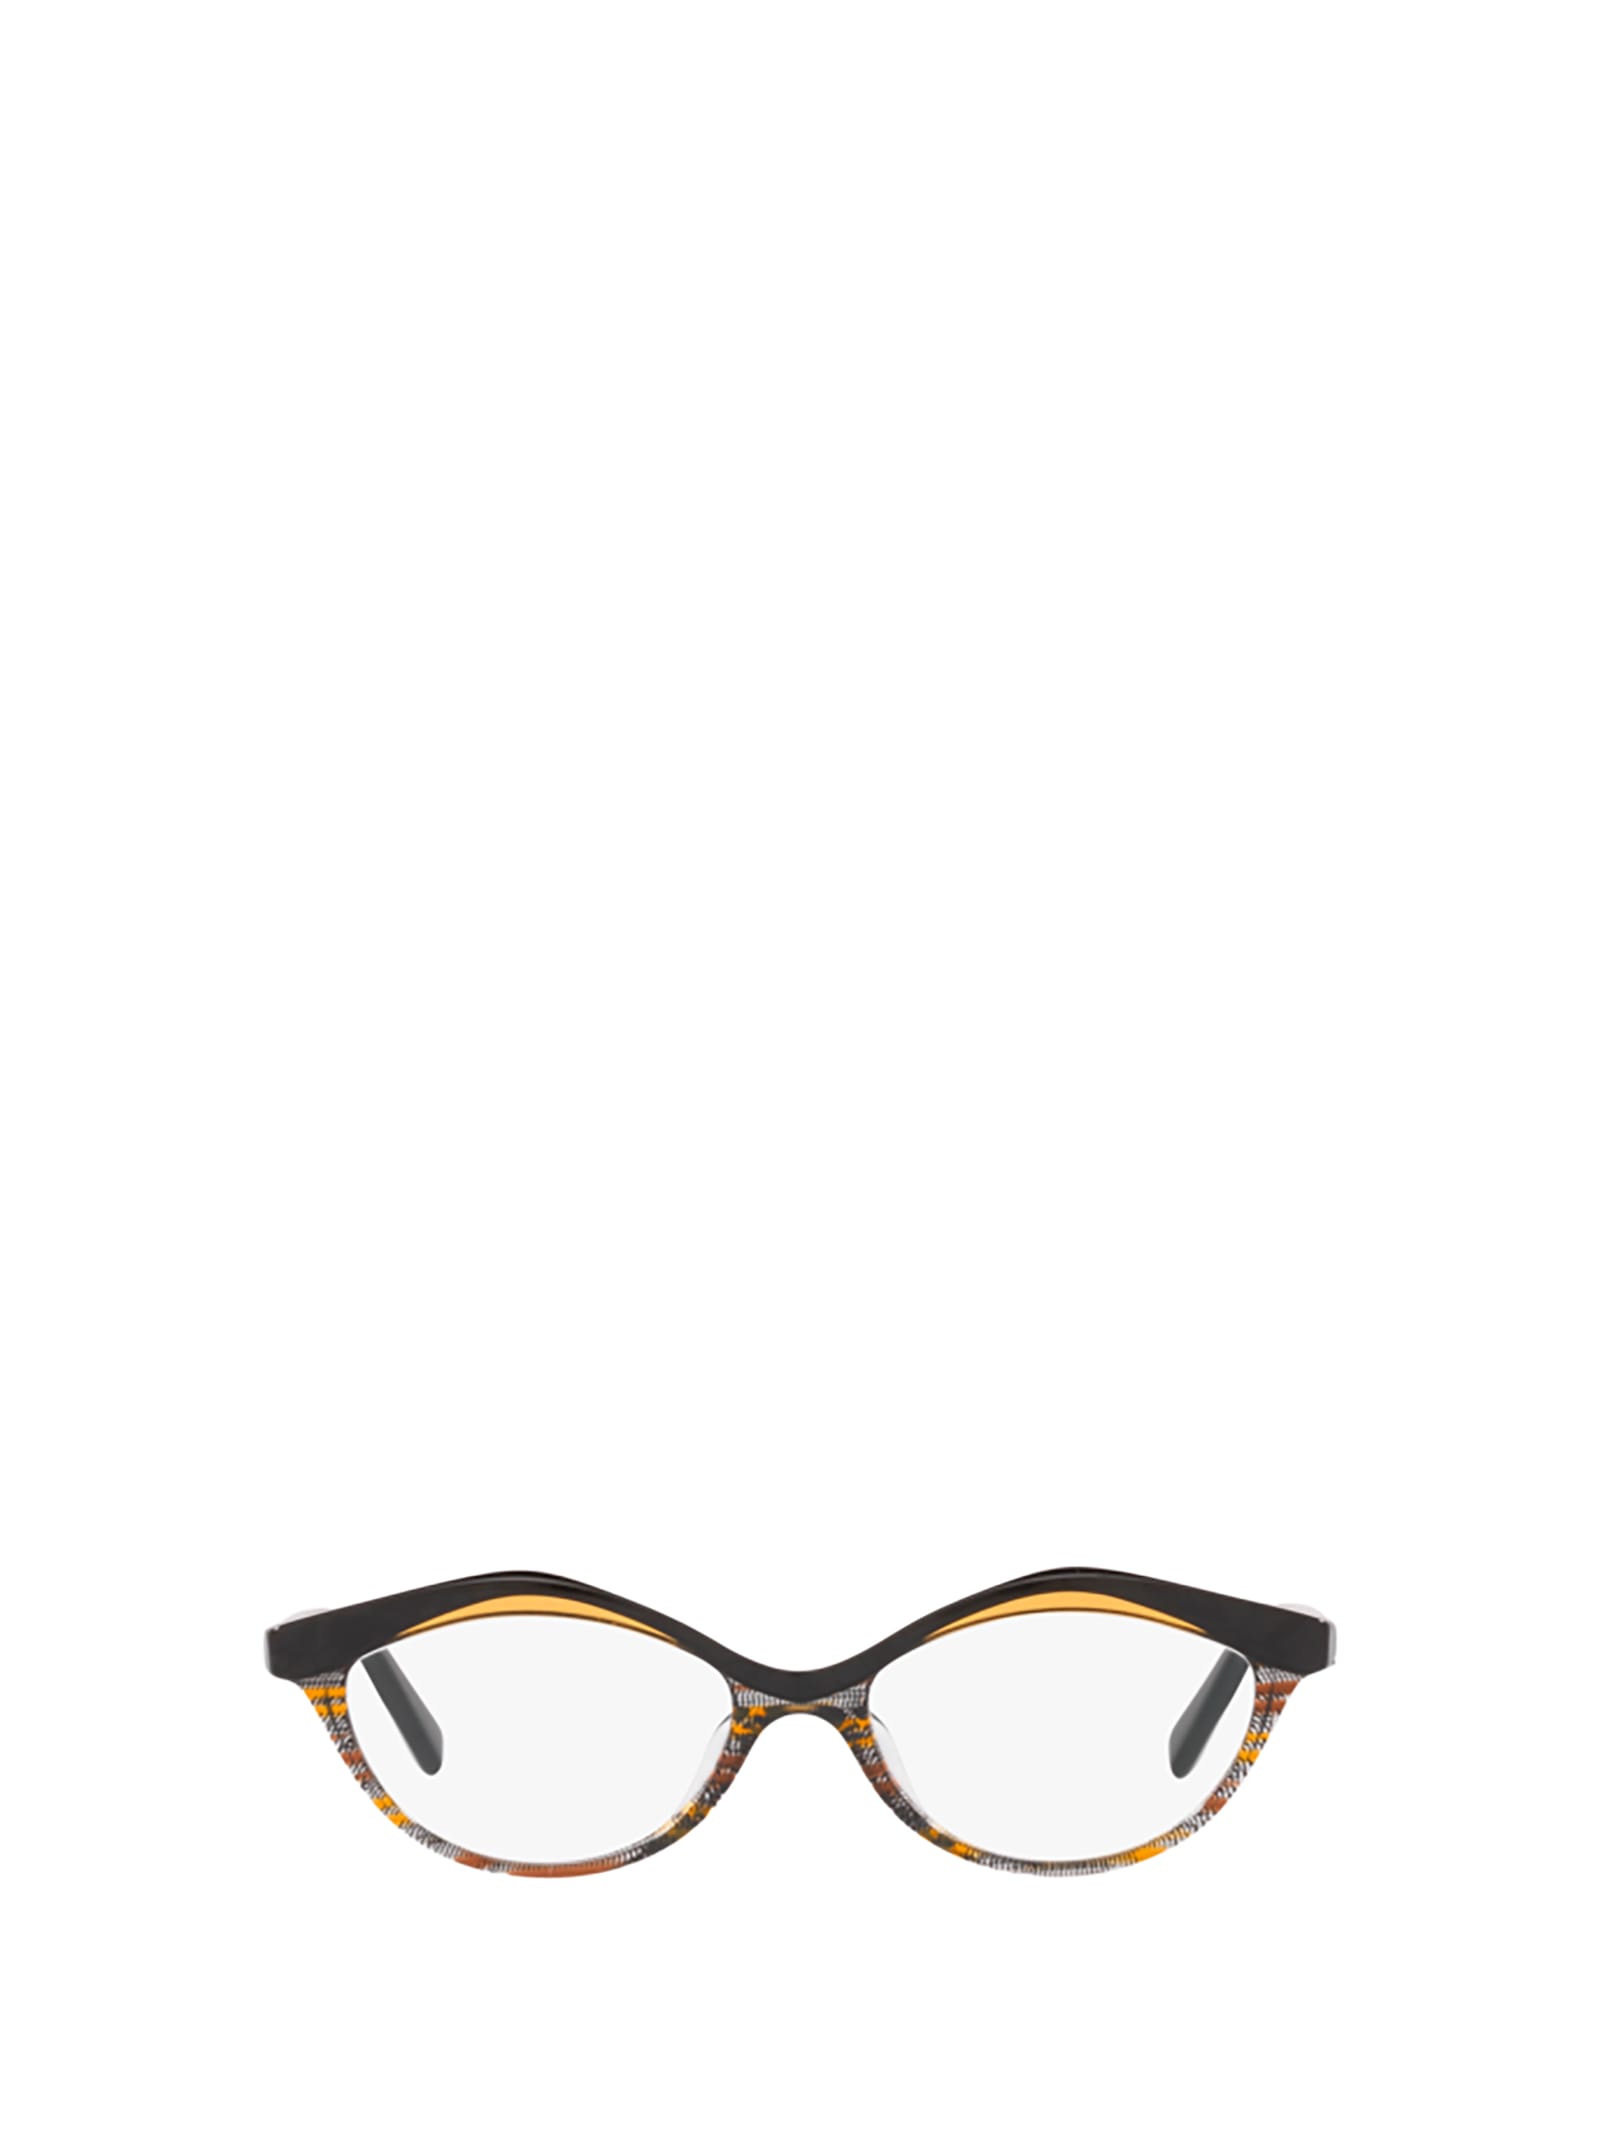 Alain Mikli A03155 Yellow Brown Glasses